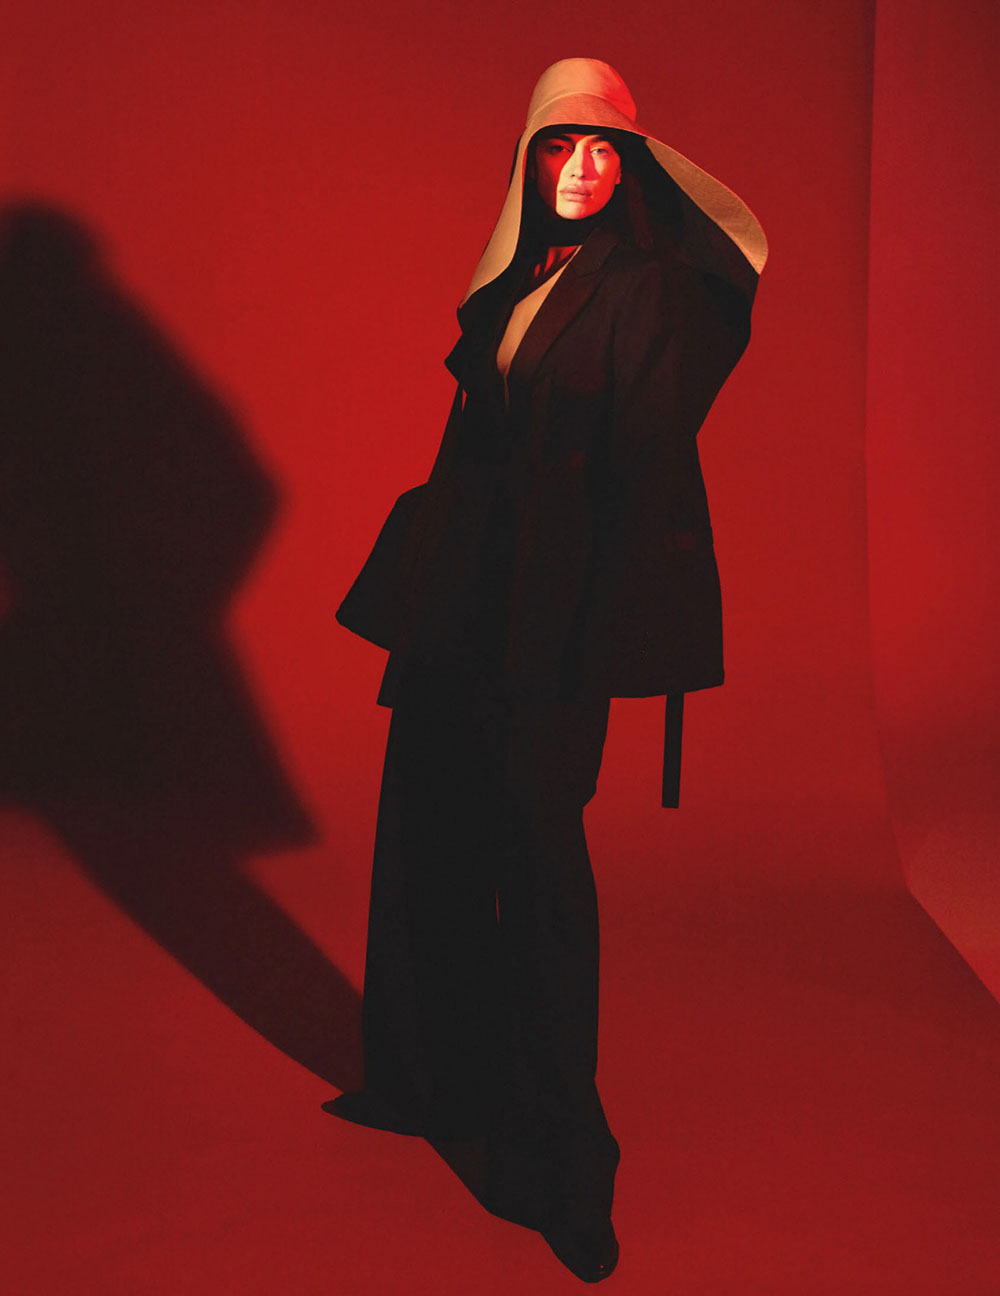 Irina Shayk covers British Vogue March 2020 by Mert & Marcus